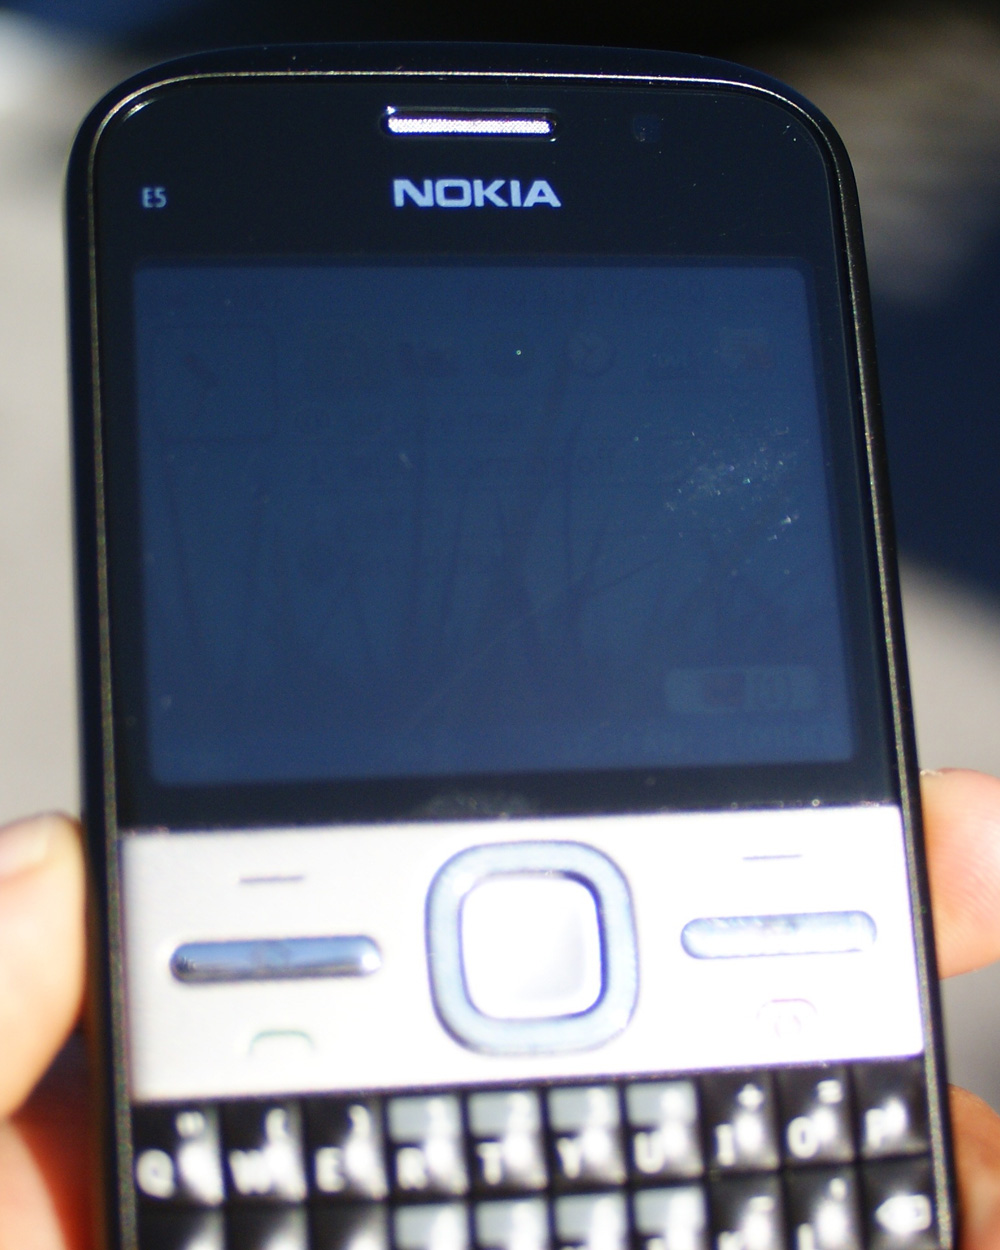 Porn Video For Nokia E5 00 - Display and Camera - The Nokia E5 Review: A Cheaper E72